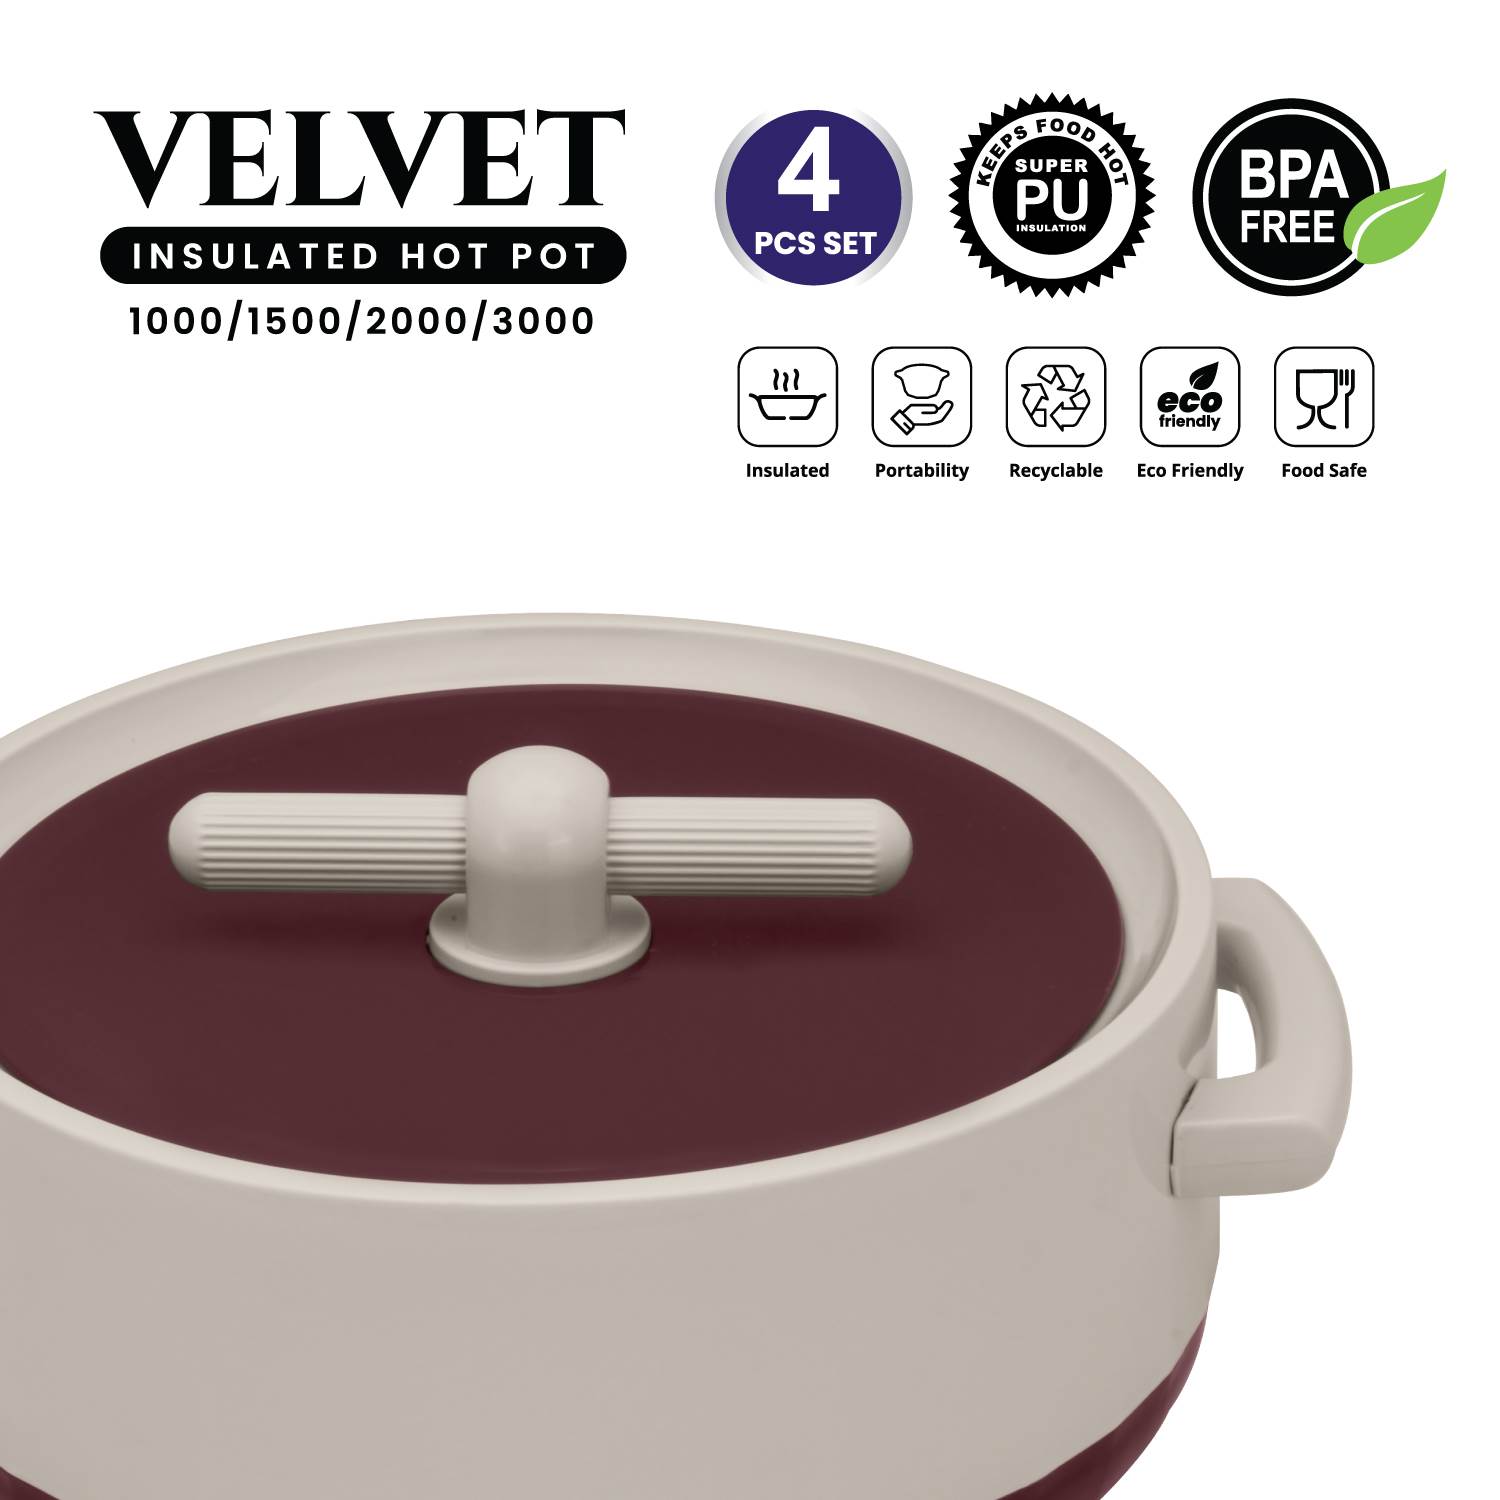 Selvel Velvet 4 Pc Set (1000/1500/2000/3000) - RED